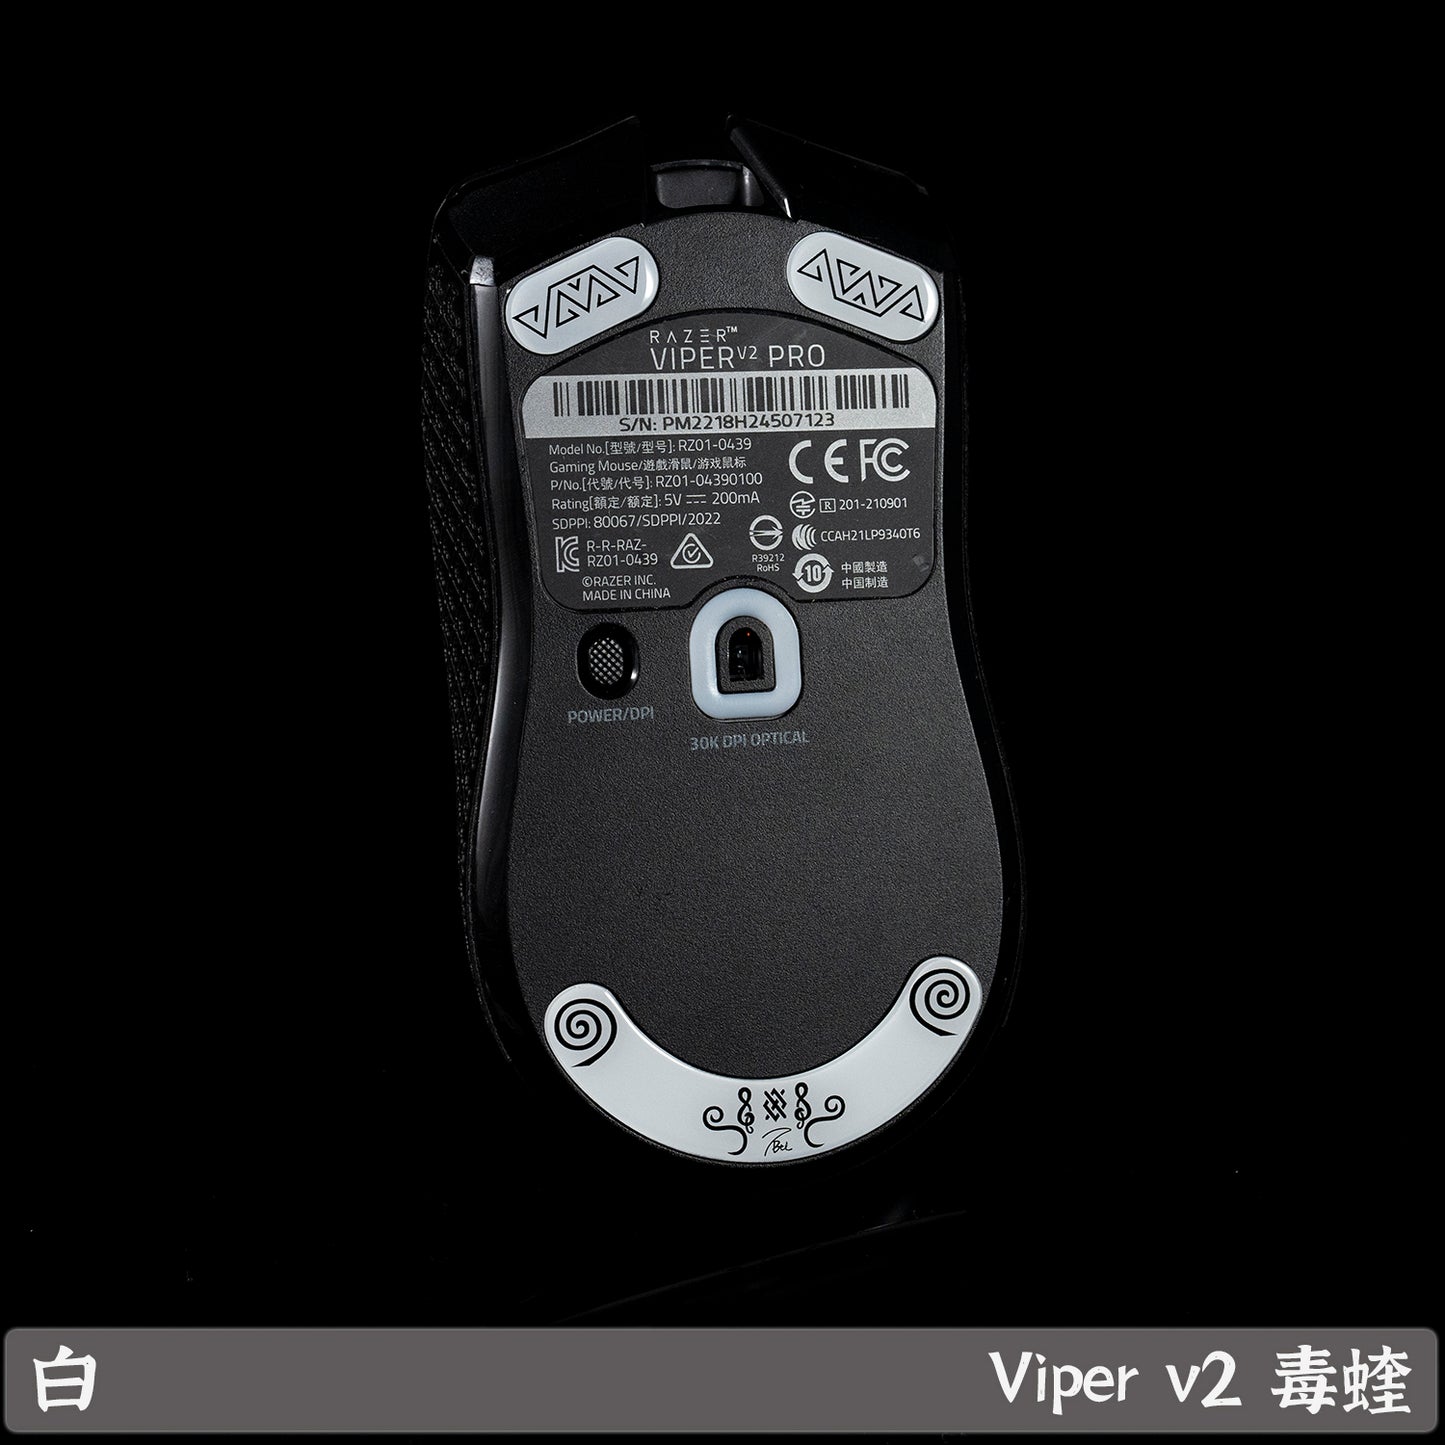 BT.L Glass Skates - Razer Viper V2 Pro